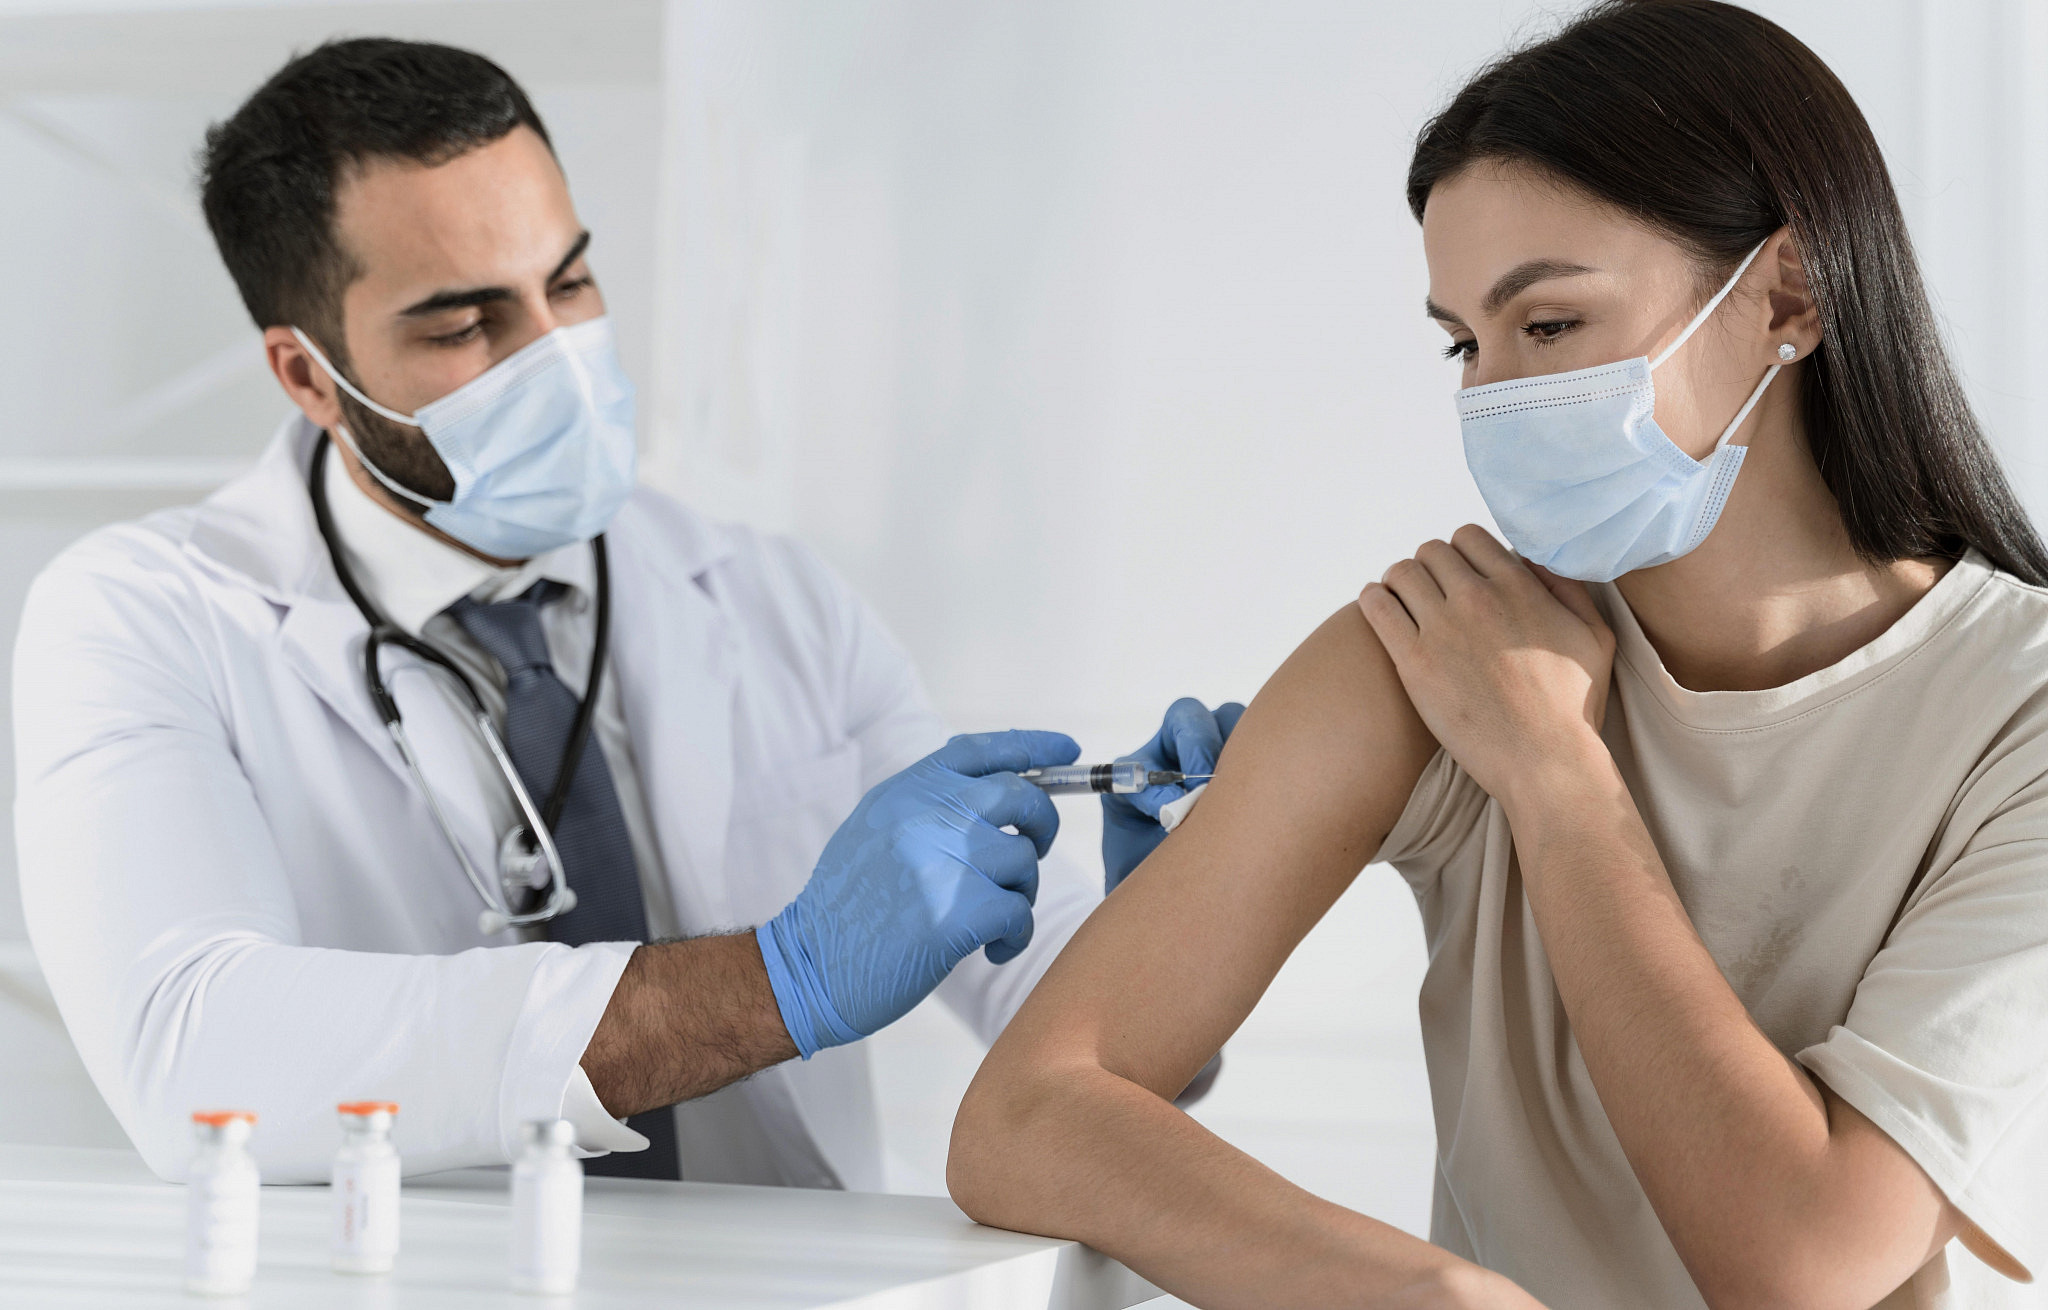 אישה מקבלת חיסון כנגד נגיף הקורונה, צילום: freepik